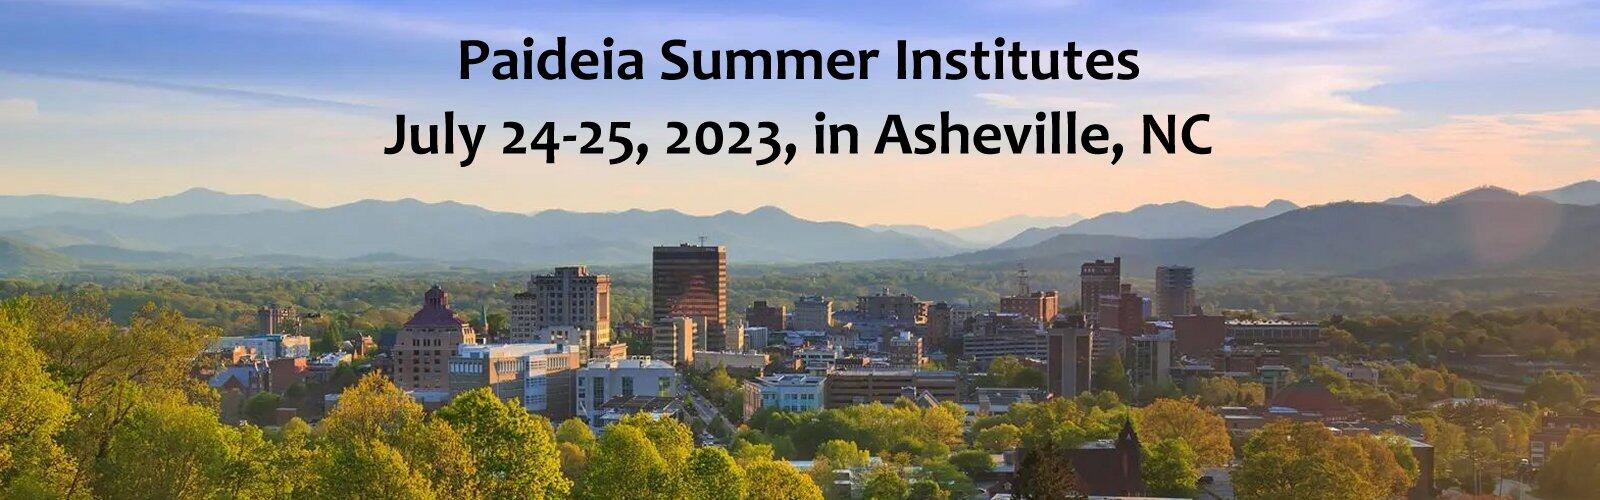 Summer Institutes in Asheville